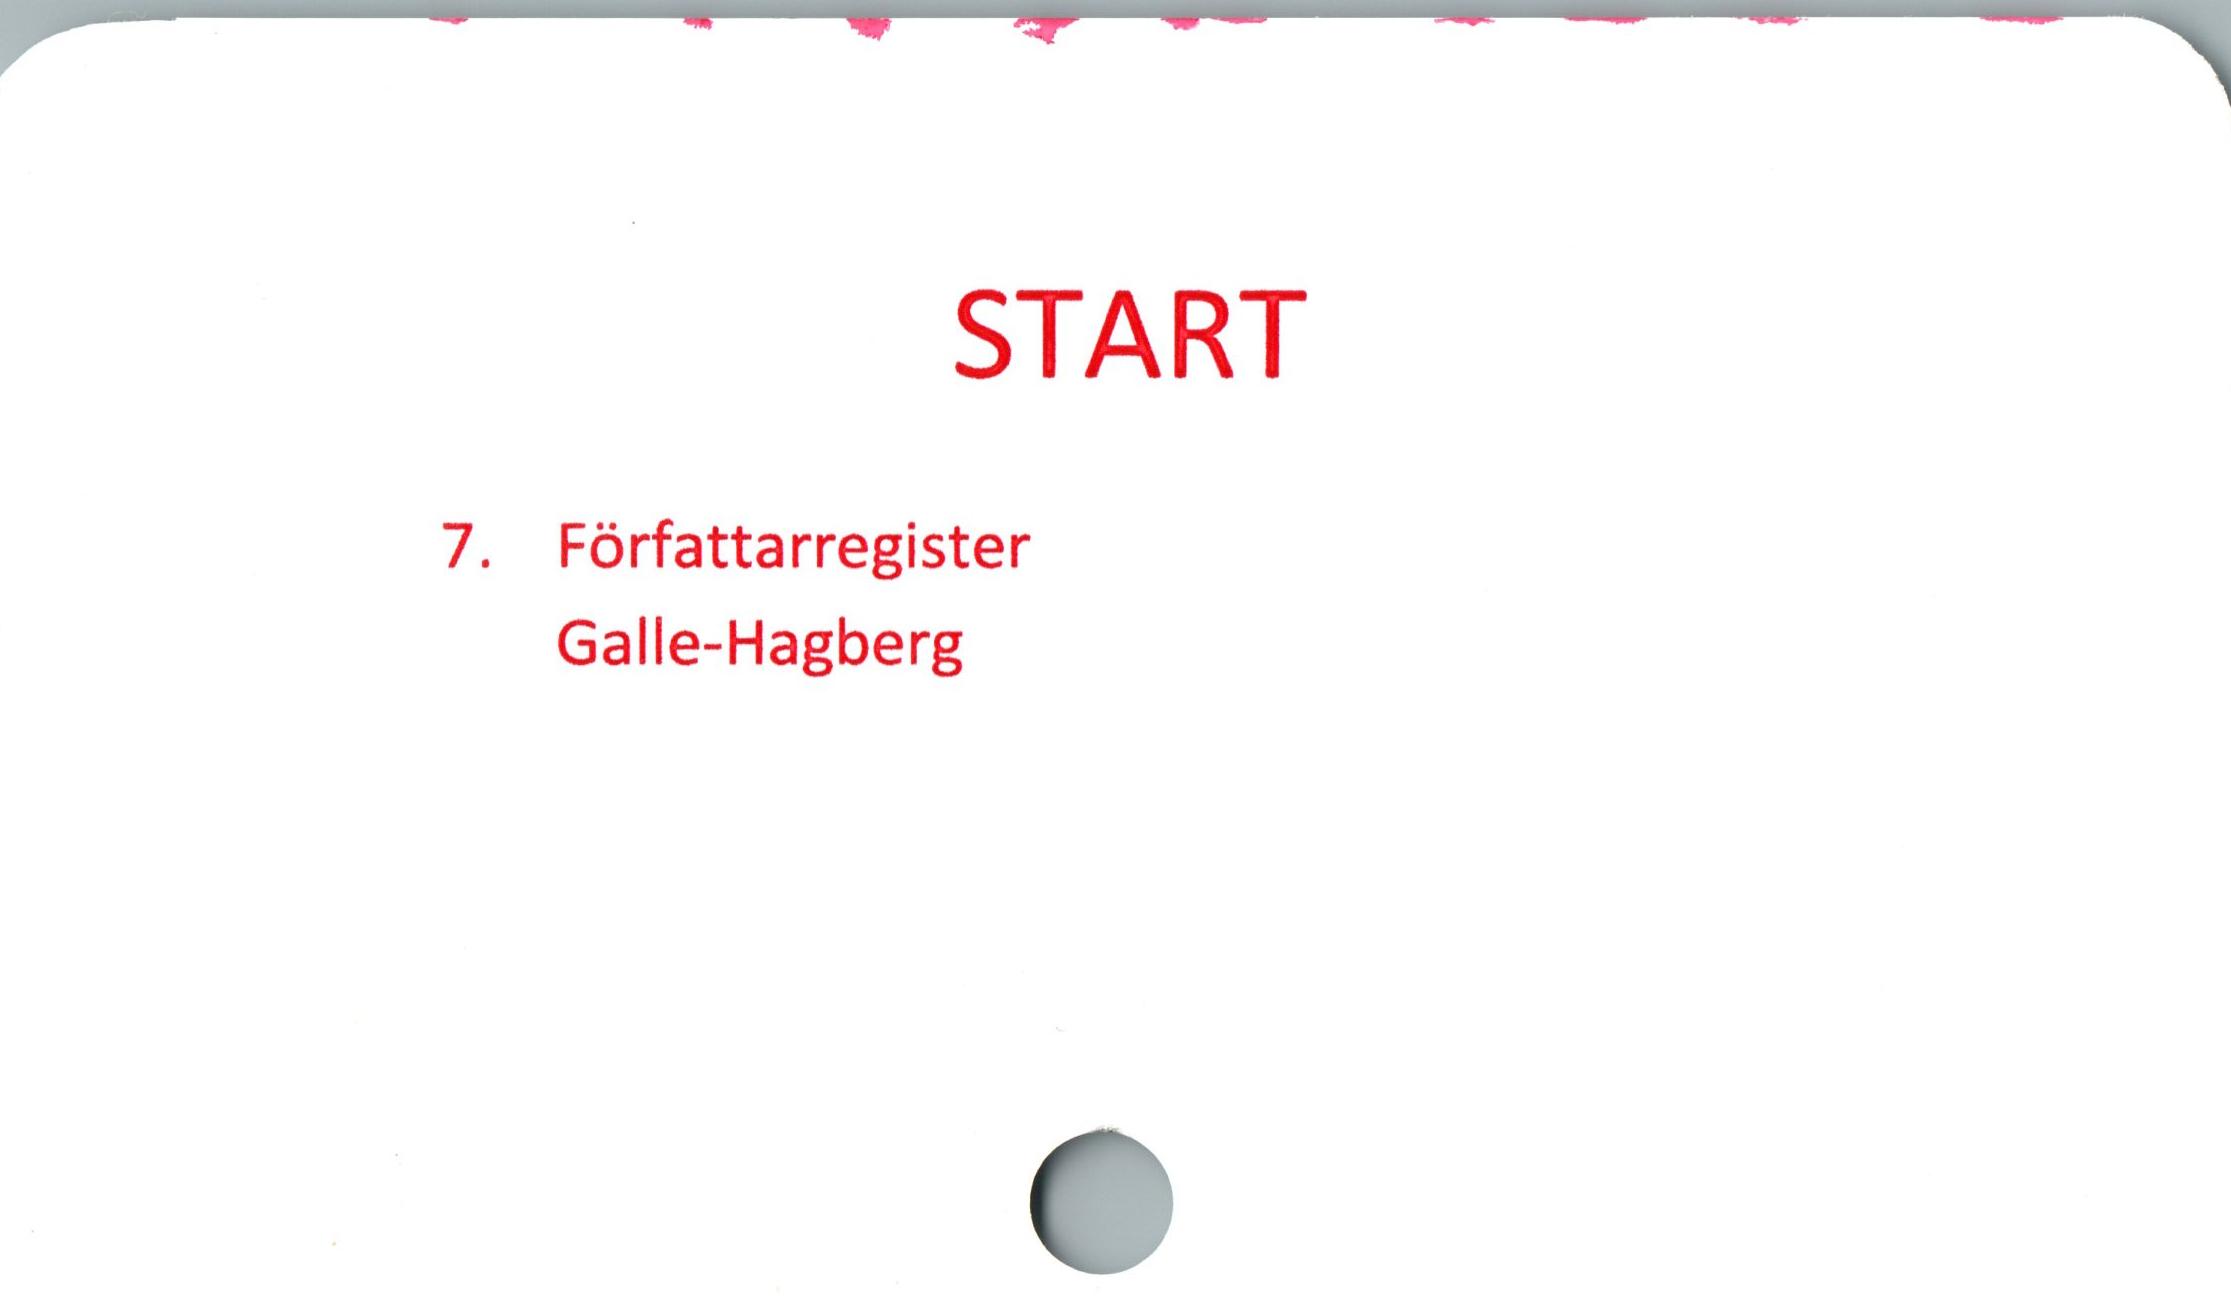  ﻿START

7. Författarregister
Galle-Hagberg